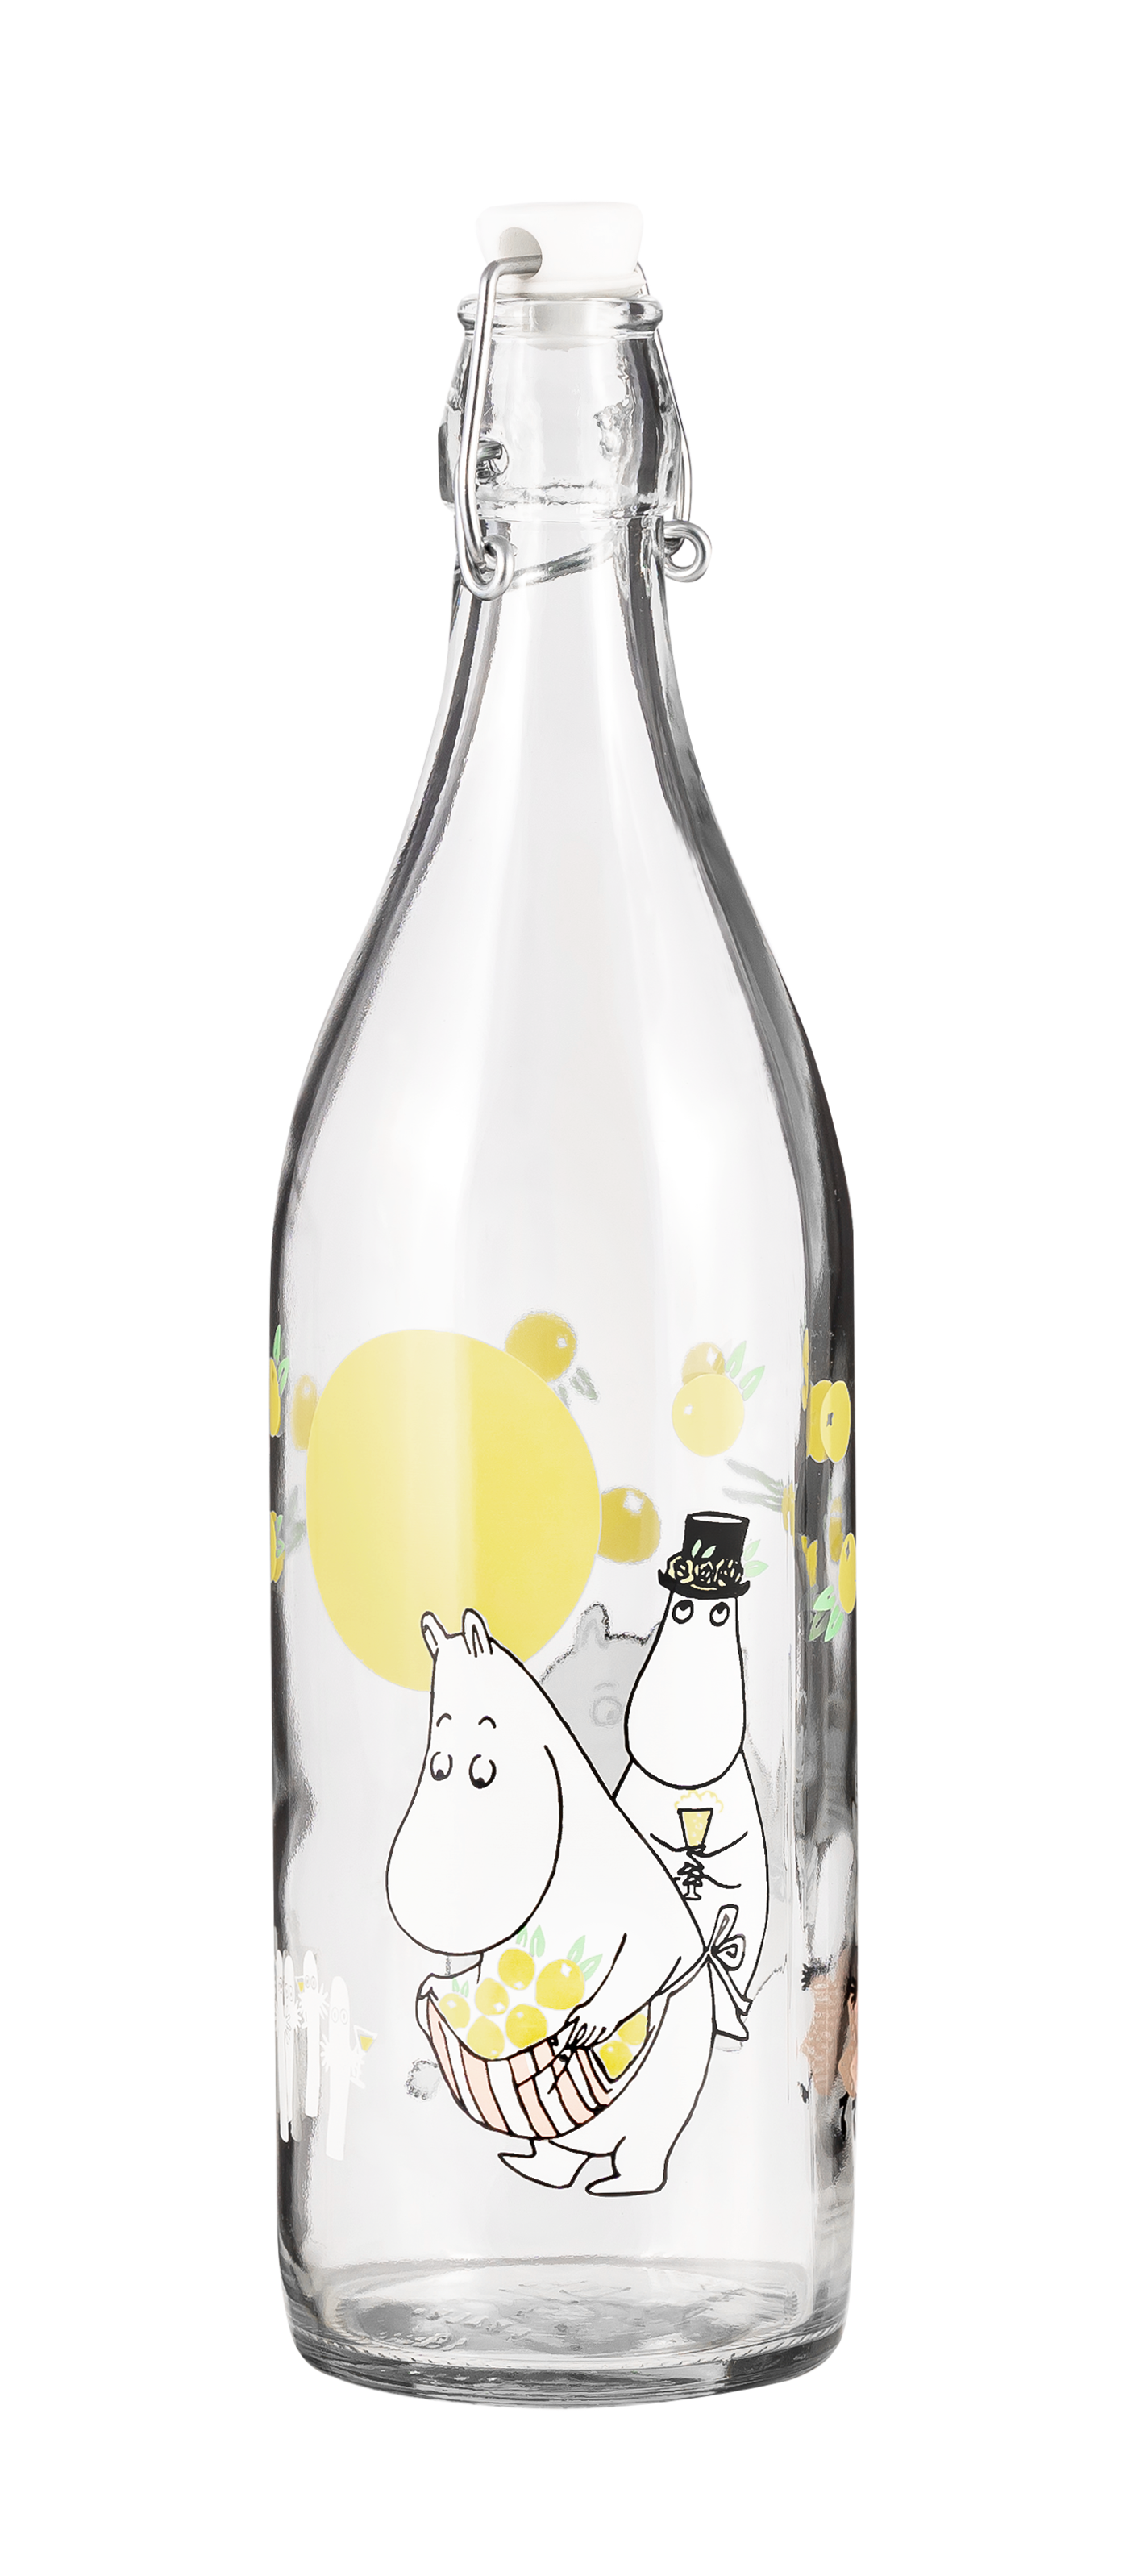 Moomin by Muurla Juhlat! K-Citymarket 50 years glass bottle 1 L